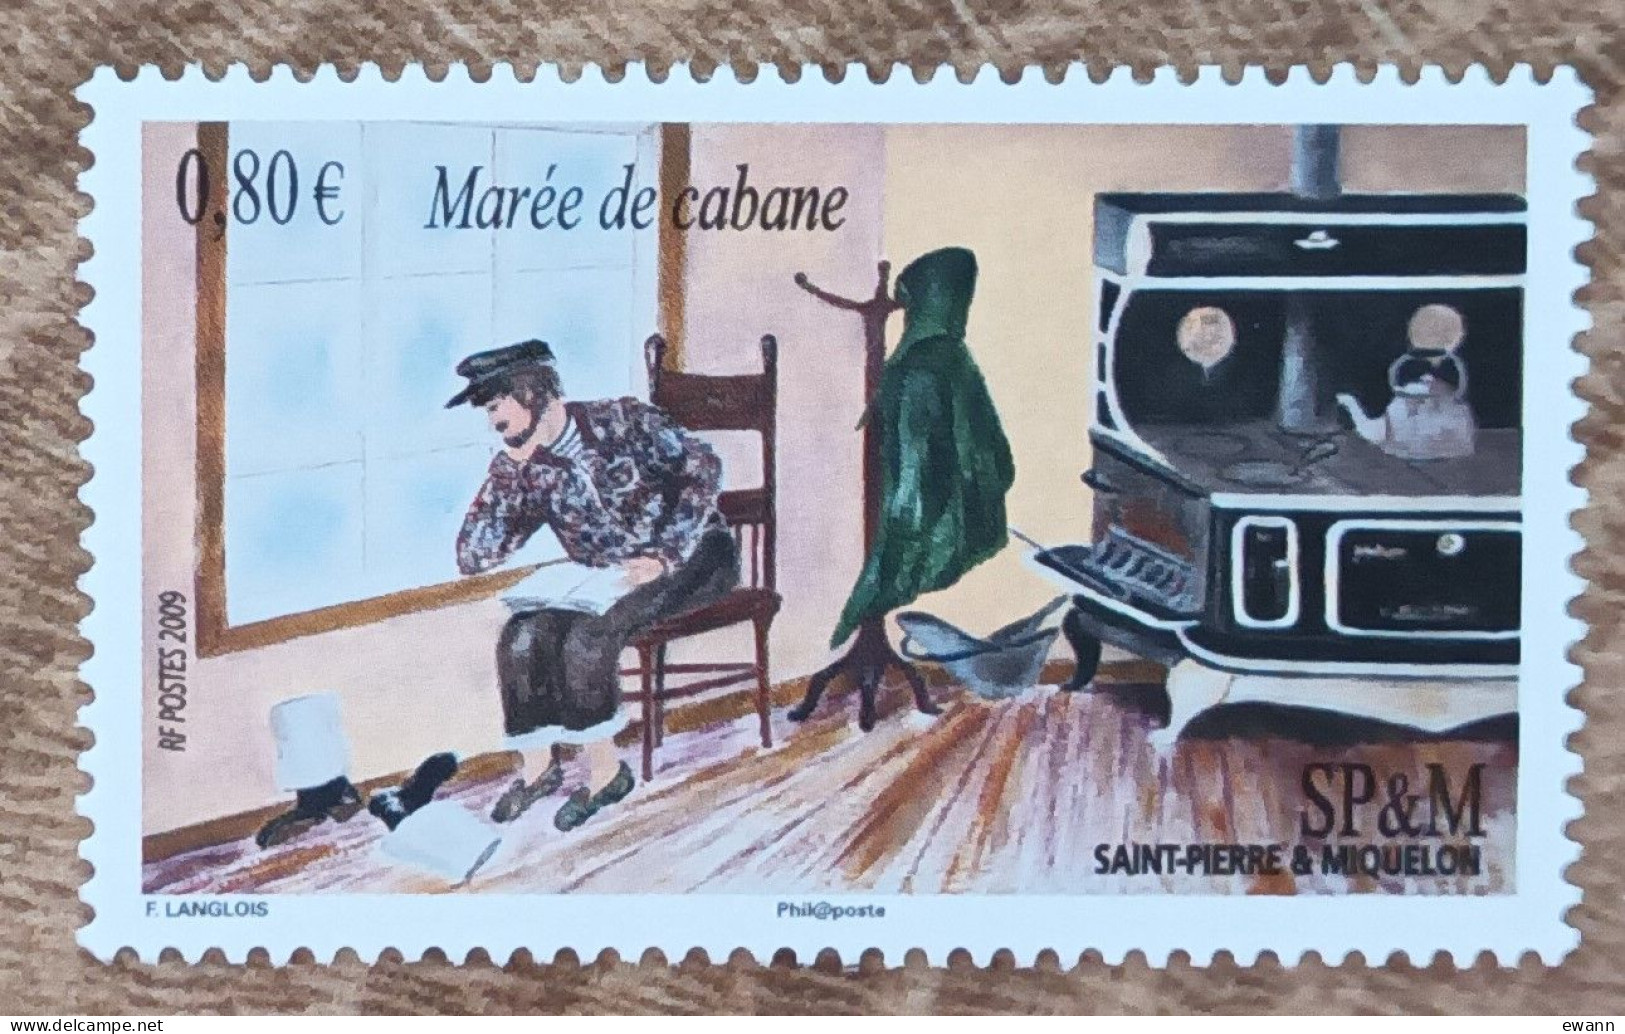 Saint Pierre Et Miquelon - YT N°959 - Expressions Locales / Marée De Cabane - 2009 - Neuf - Unused Stamps